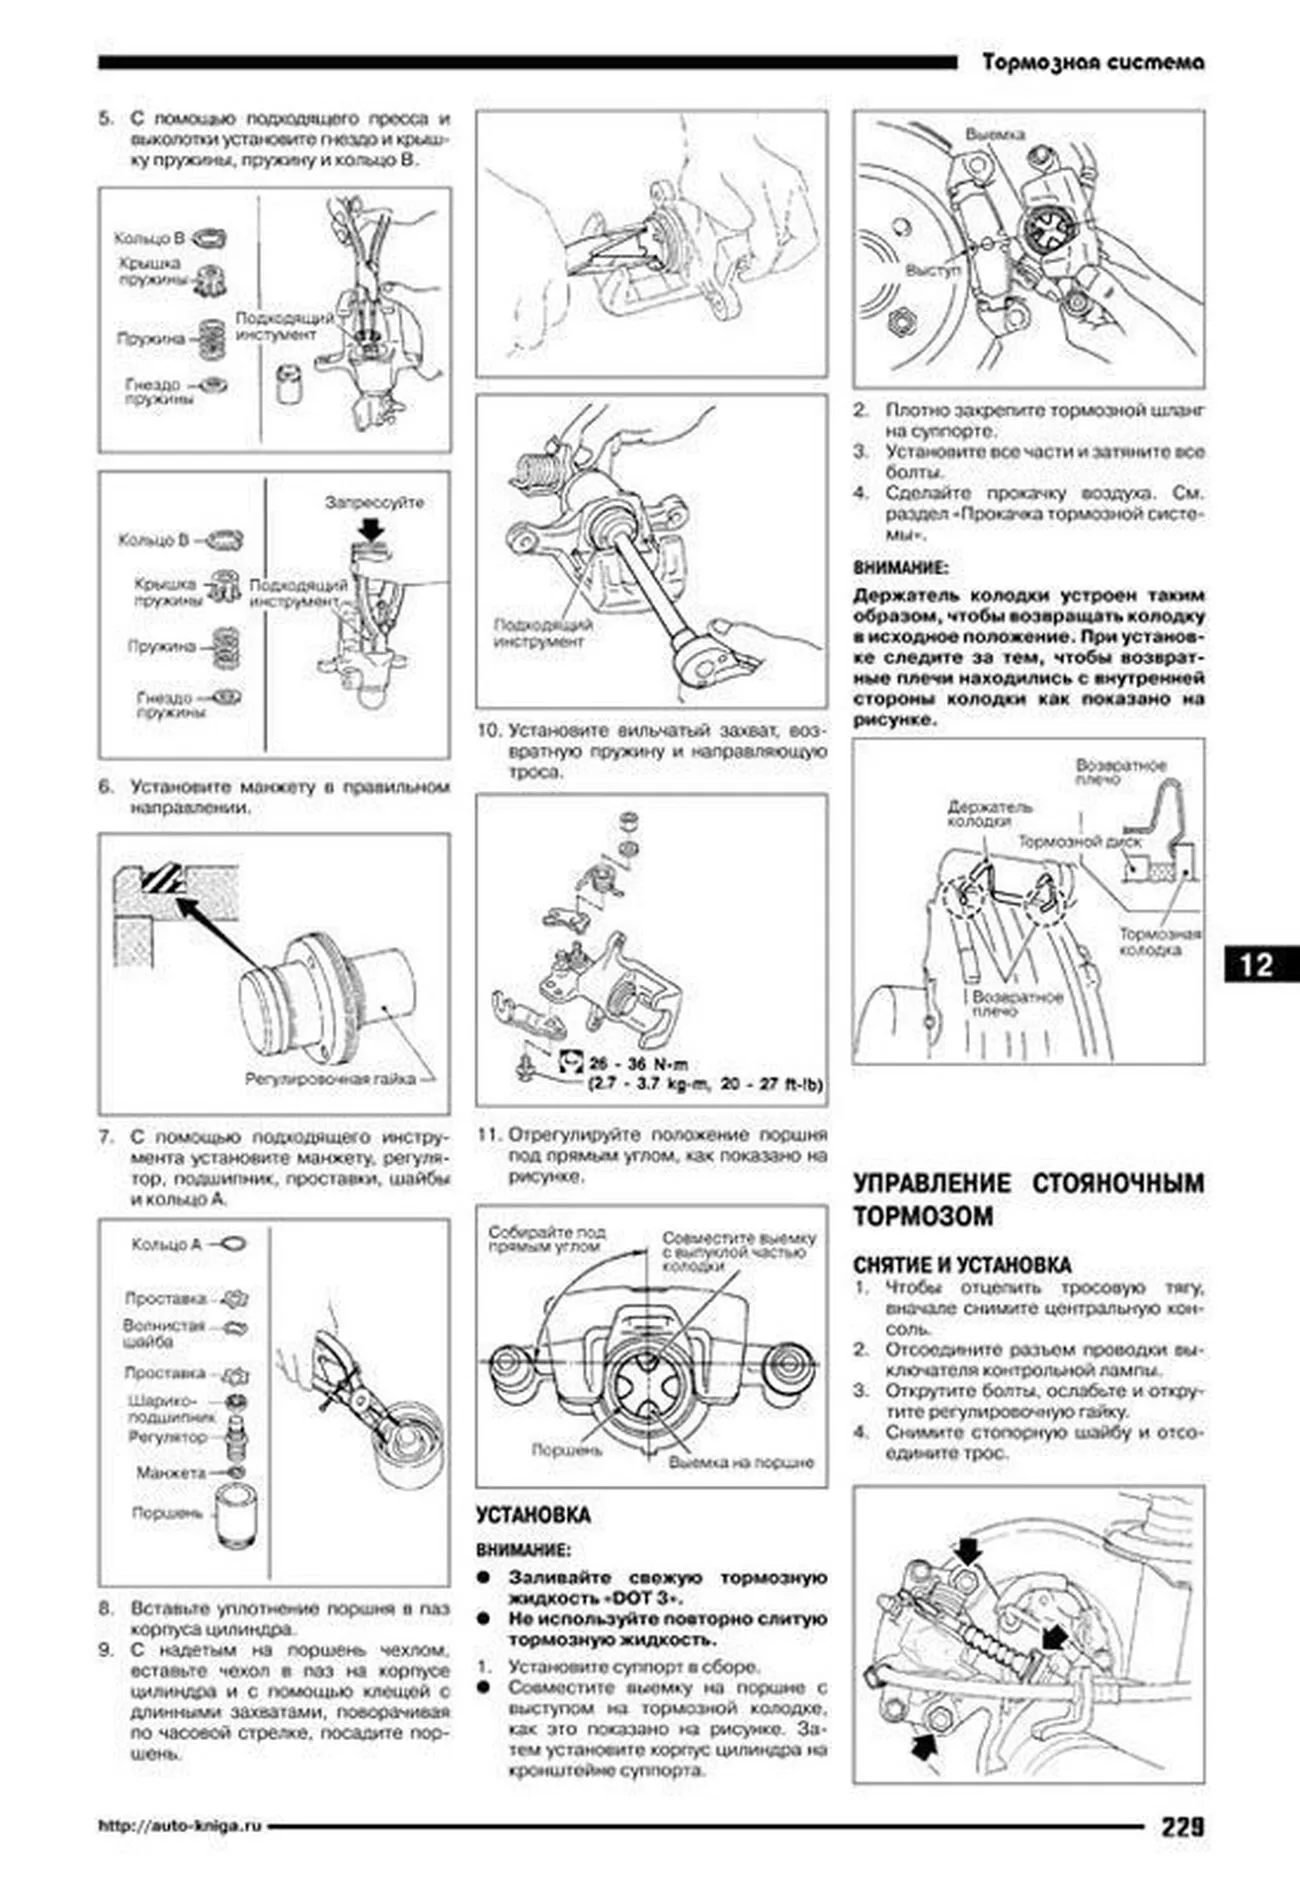 Книга: NISSAN CEFIRO / MAXIMA QX (б) 1998-2002 г.в., рем., экспл., то | Автонавигатор